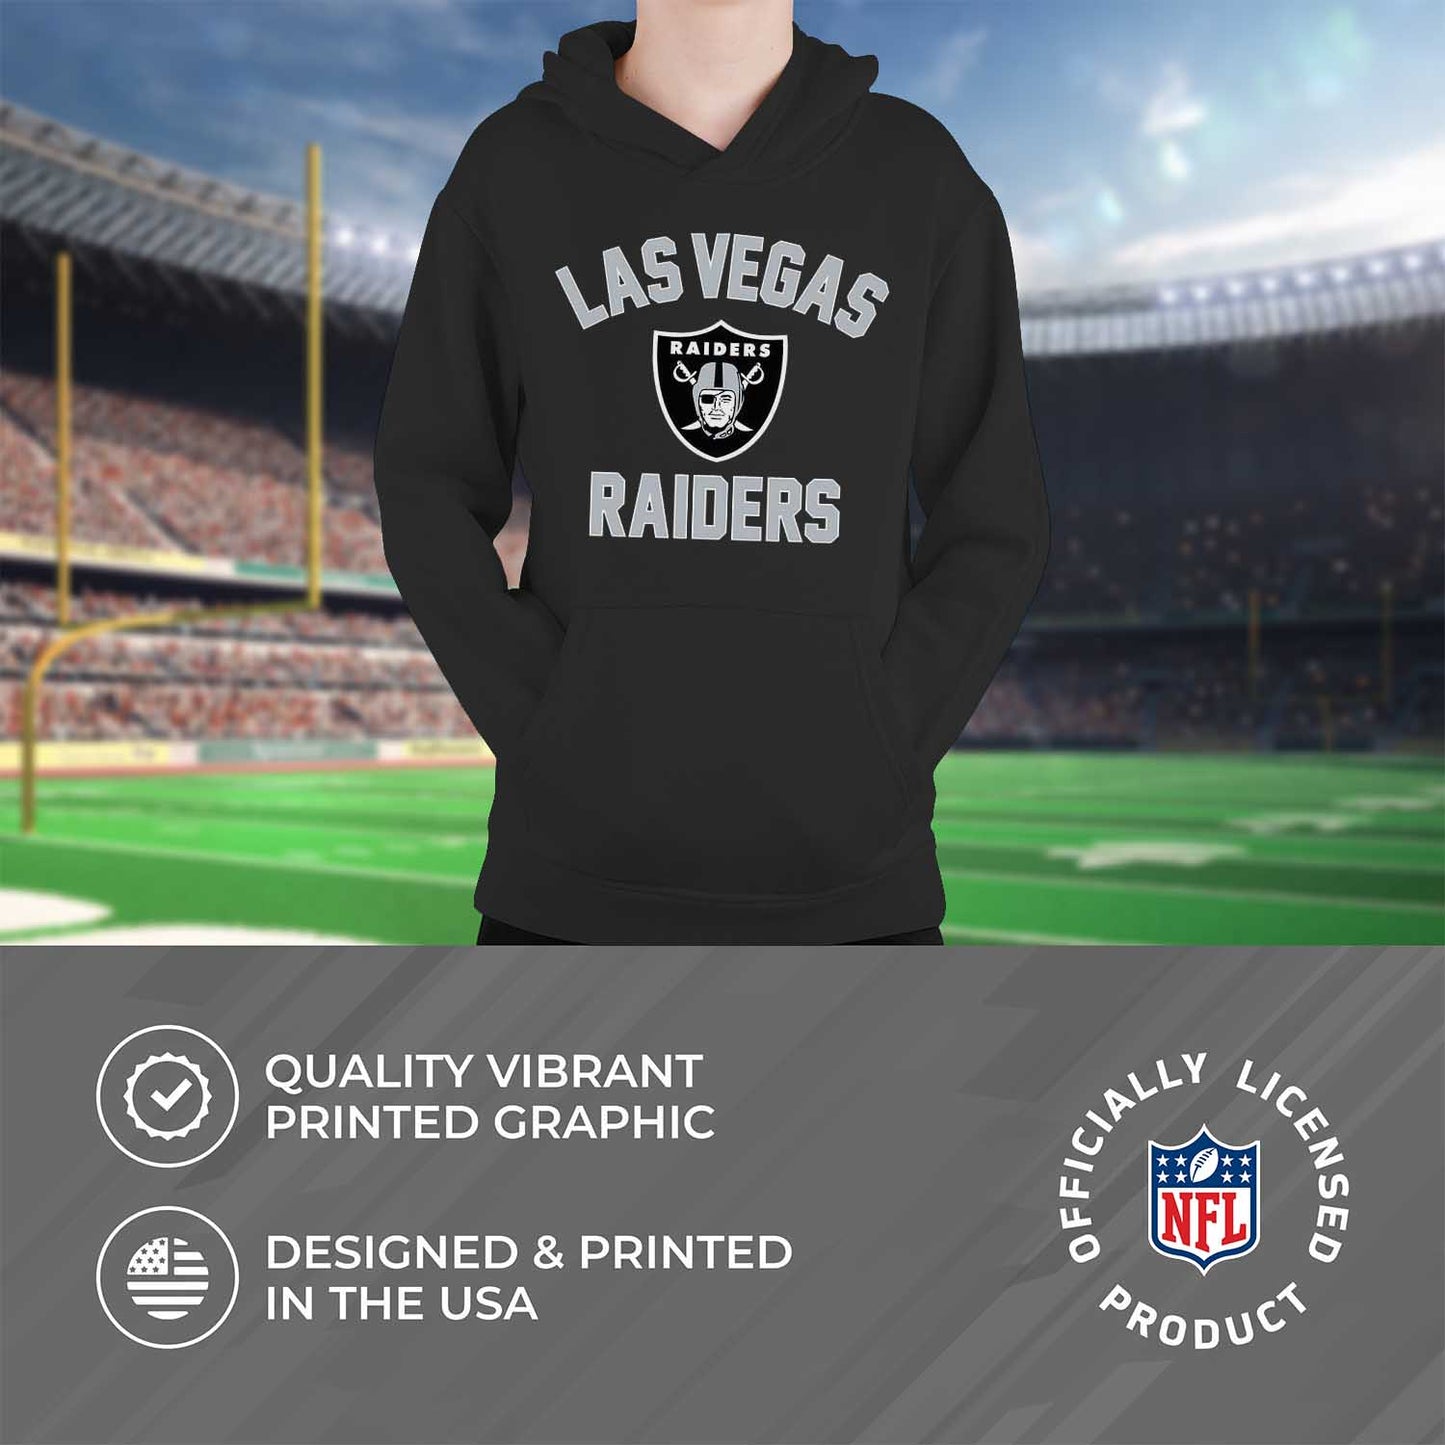 Las Vegas Raiders NFL Youth Gameday Hooded Sweatshirt - Black